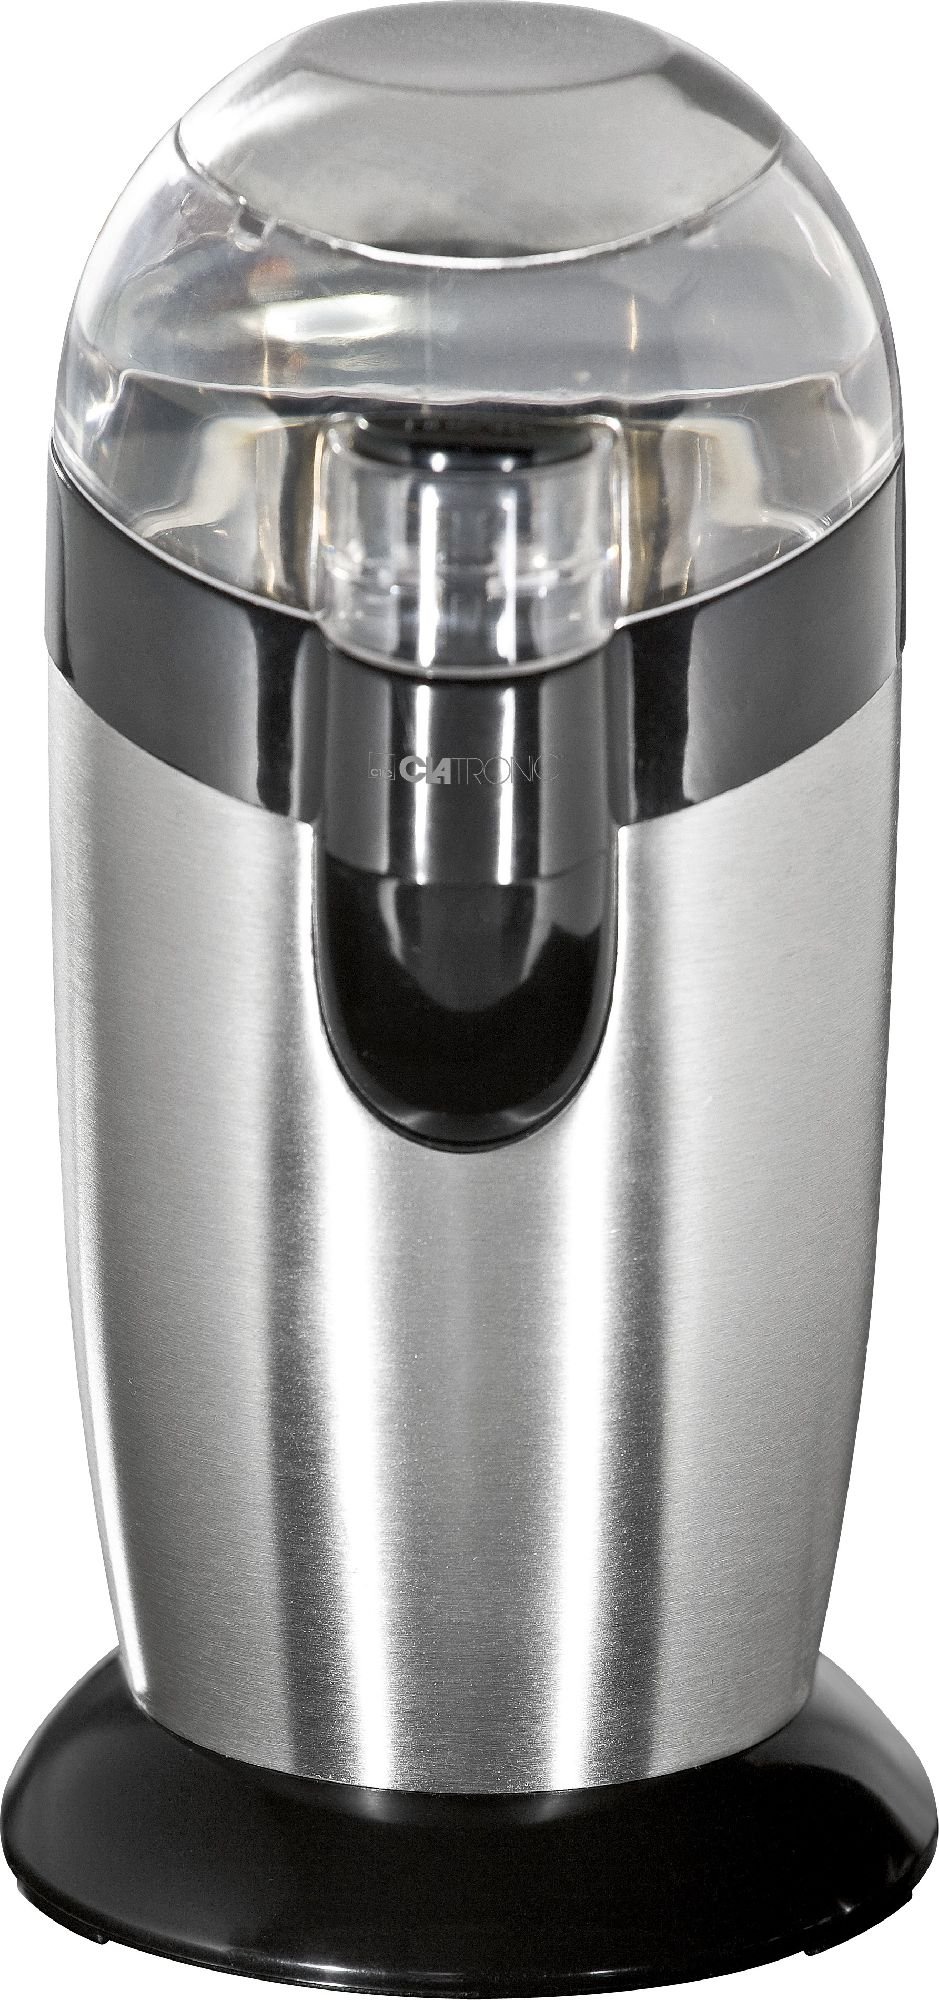 Rasnite - Rasnita de cafea Clatronic KSW3307, 120W, 40 g, Argintiu